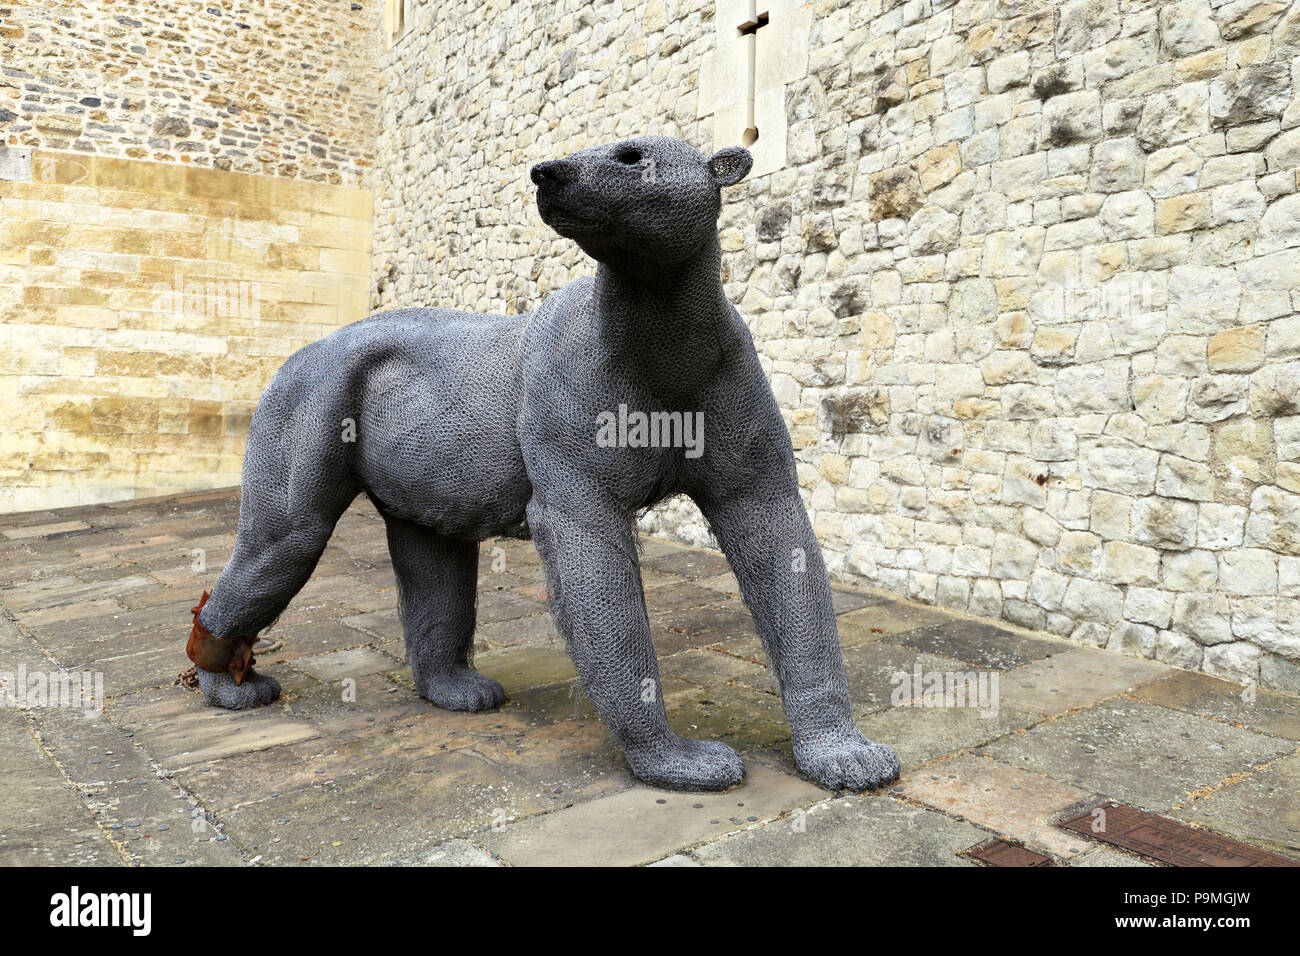 Cable esculturas de animales a la Torre de Londres, creada por el escultor Kendra apresuradamente, son un guiño a la herencia de la torre. Los reyes medievales en torno a Europa u Foto de stock